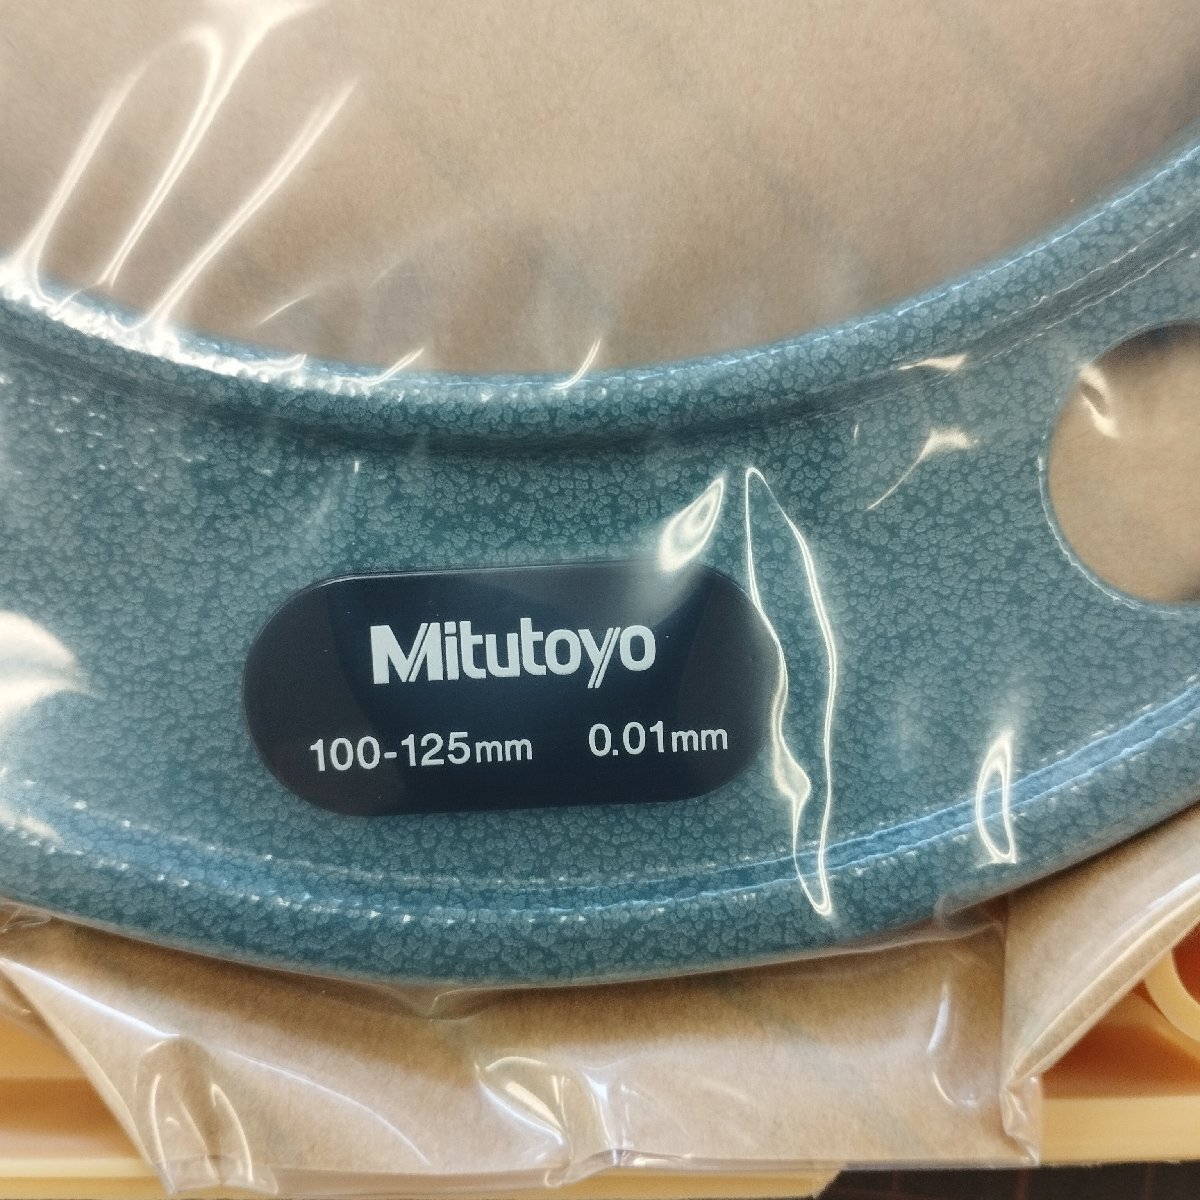 [S727]mitsutoyo микро измерительный прибор OM-125(103-141) OM-150(103-142) OM-175(103-143) хранение товар суммировать 